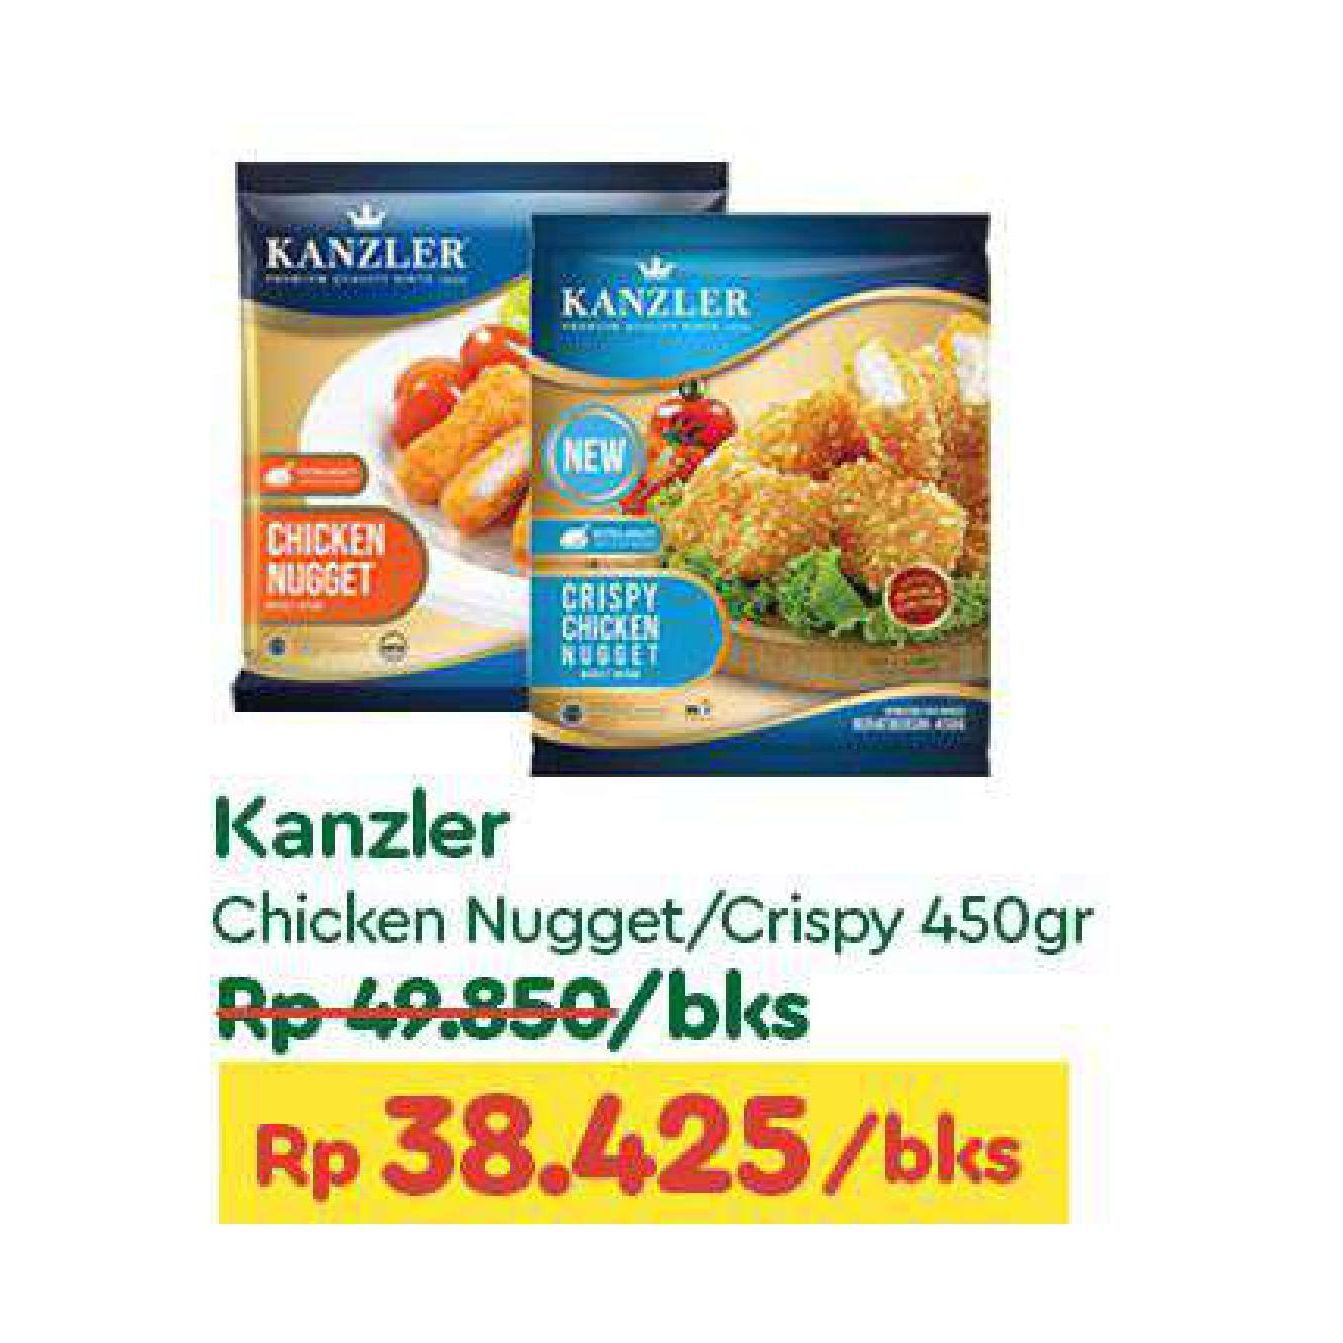 Kanzler Chicken Nugget Original, Crispy 450 gr